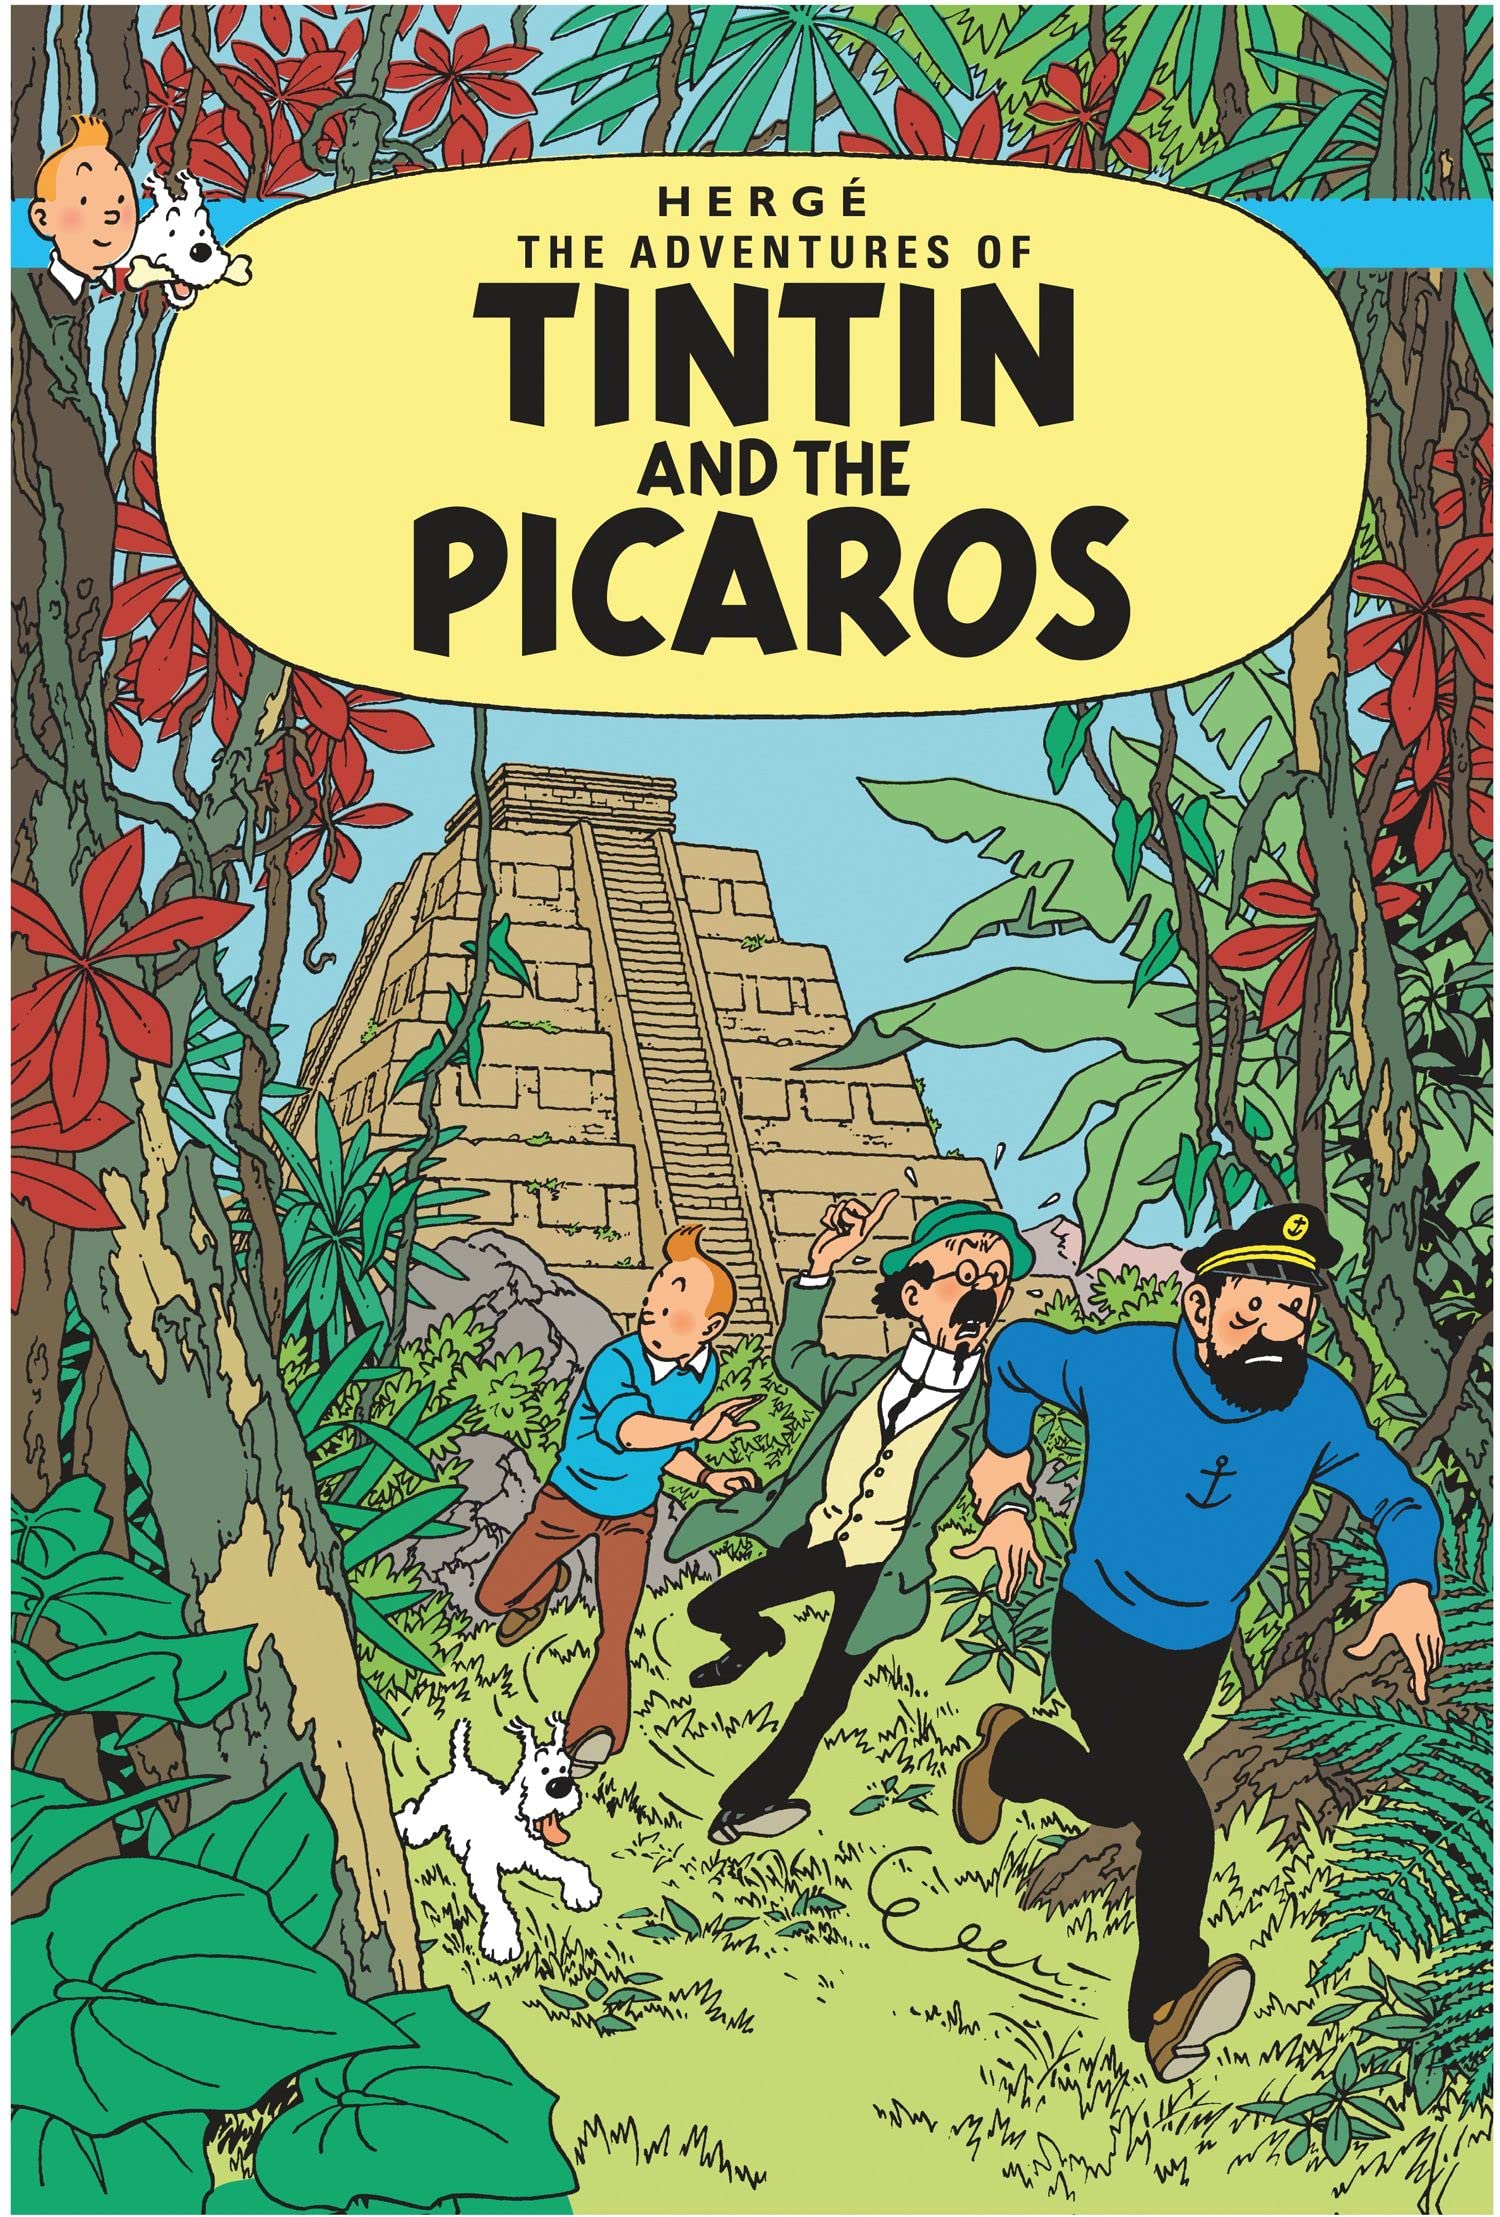 Adventures of Tintin: Tintin and Picaros